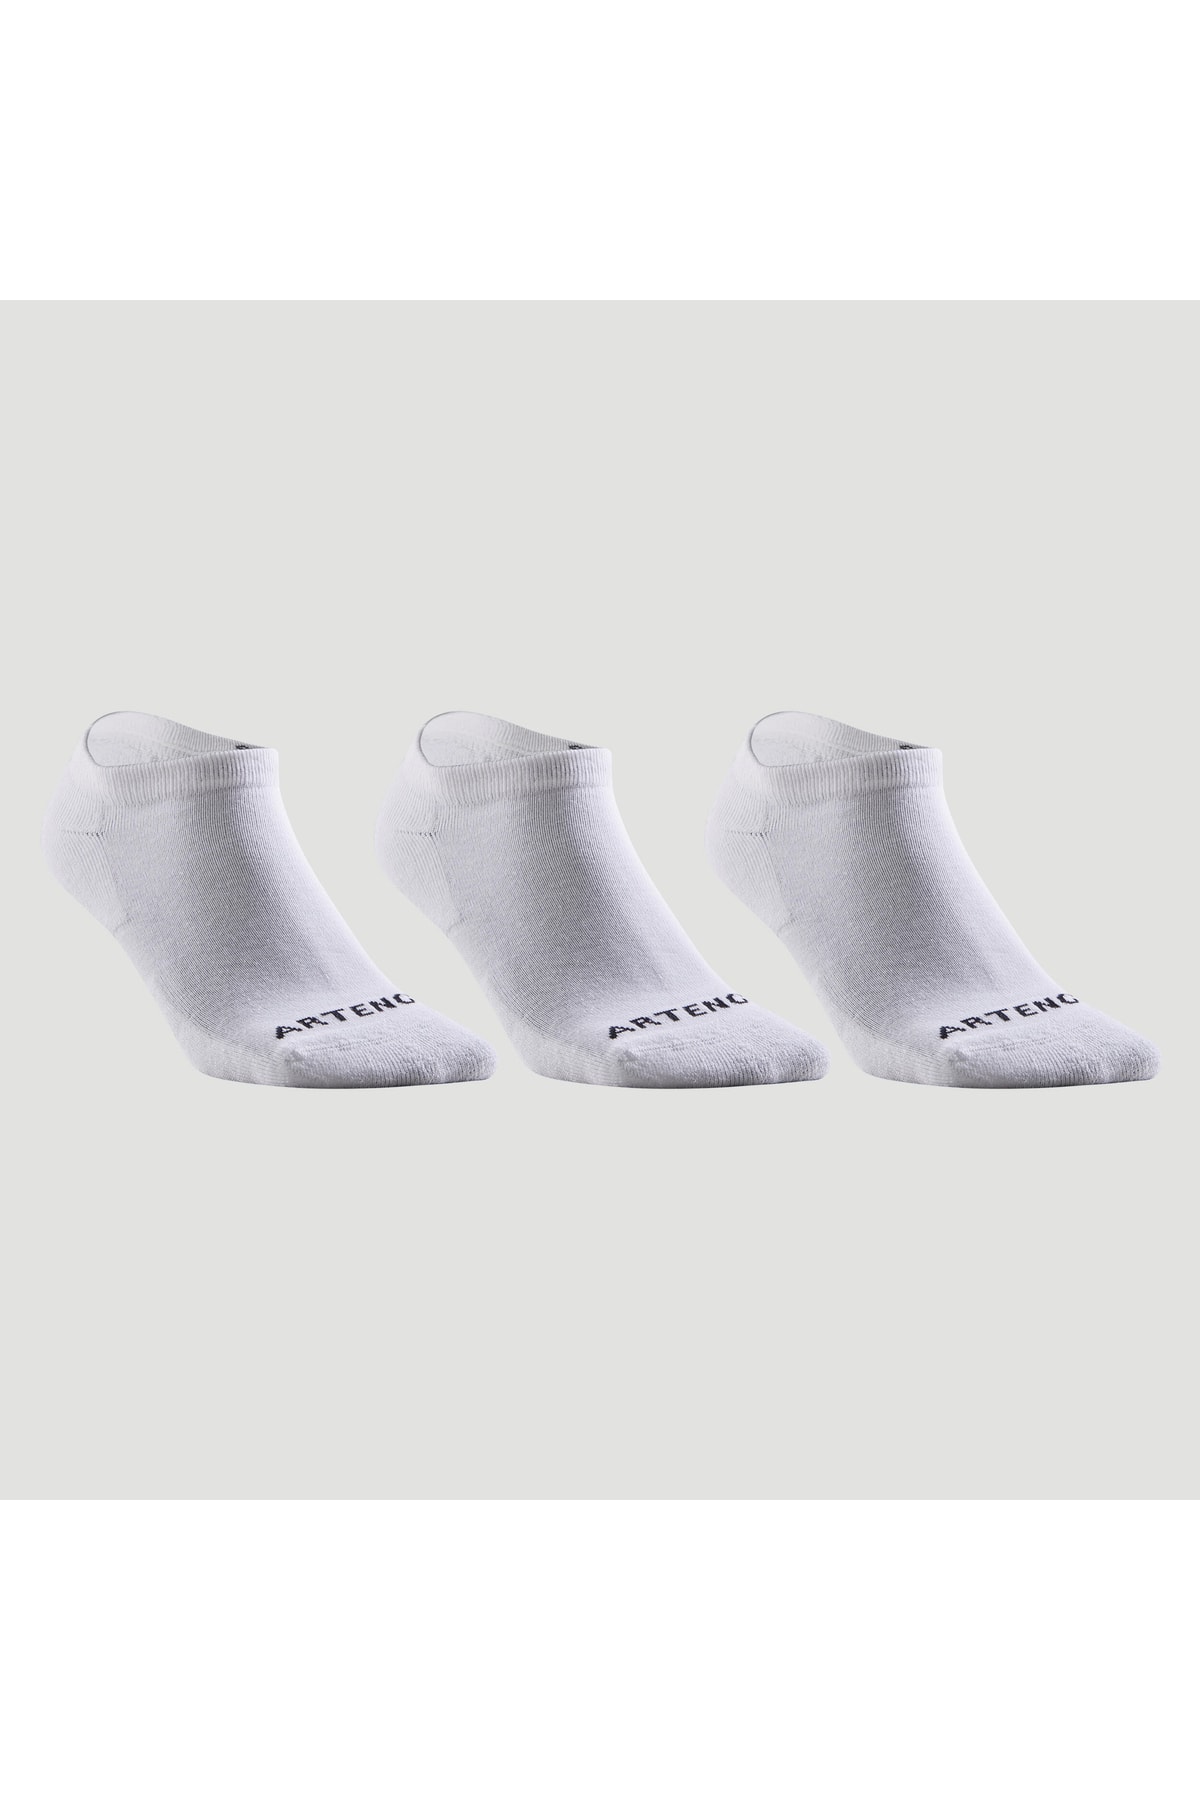 Decathlon Artengo Tenis Çorabı - Kısa Konçlu - 3 Çift - Beyaz - Rs100